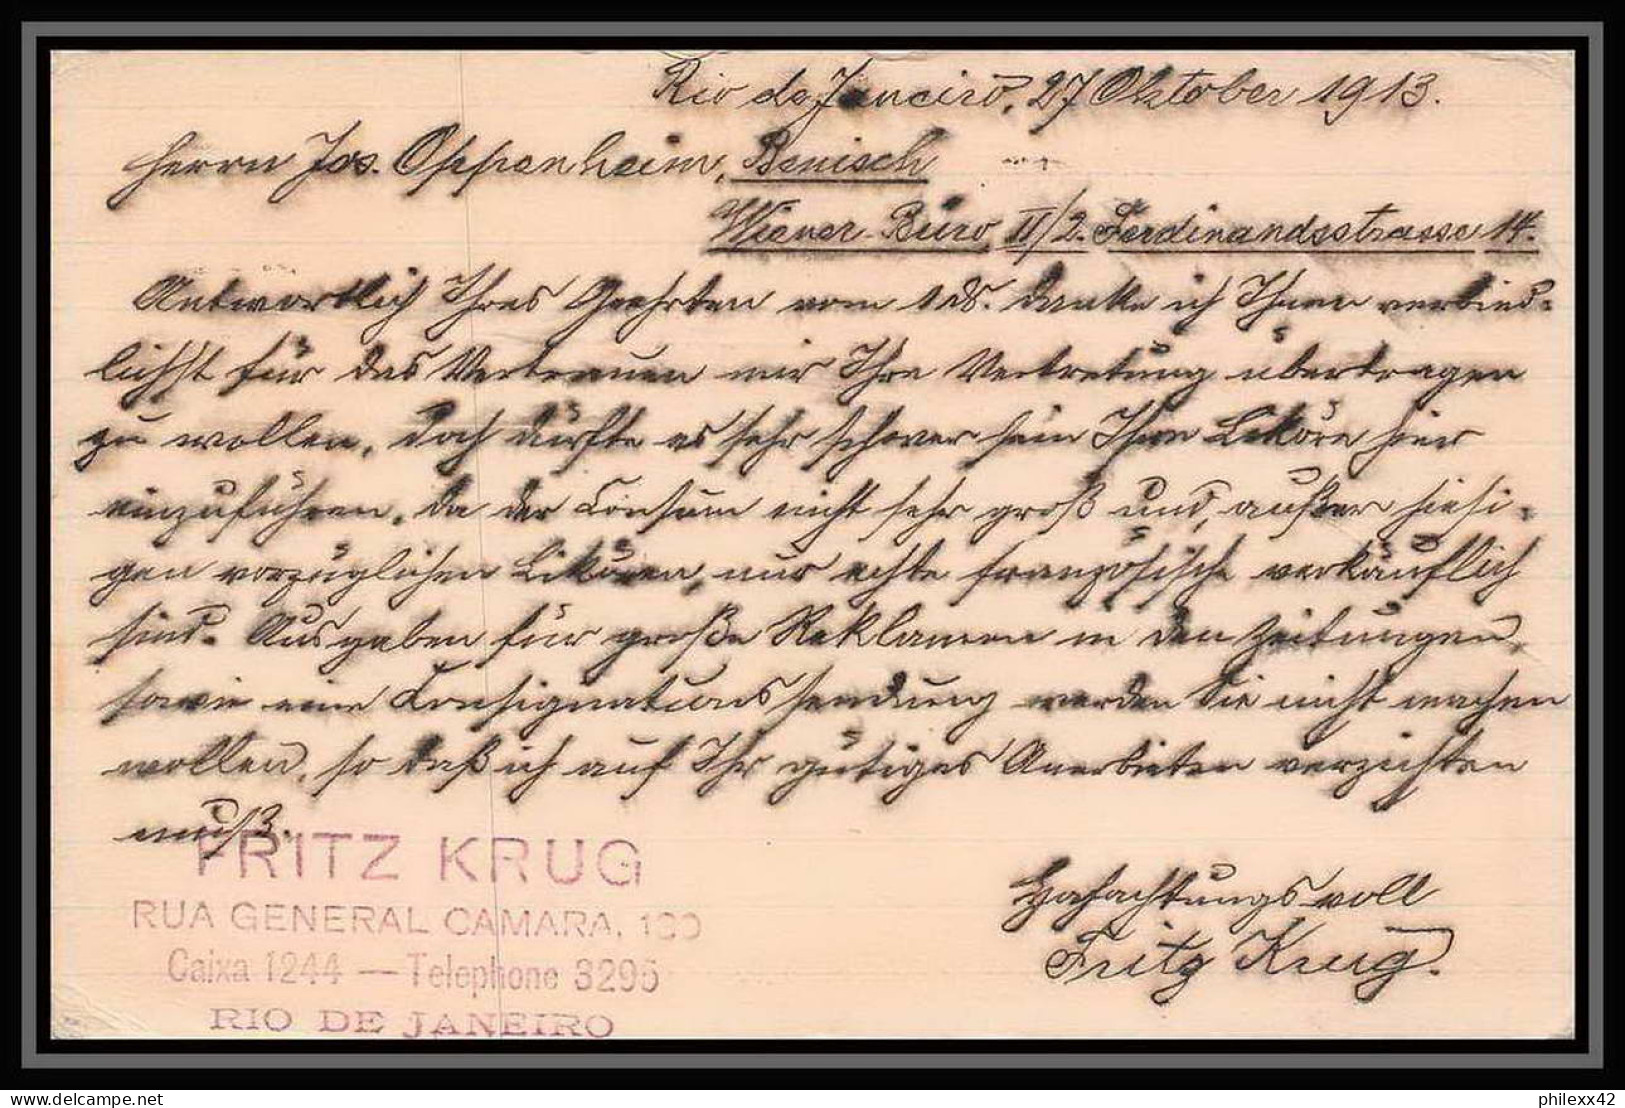 4029/ Brésil (brazil) Entier Stationery Carte Postale (postcard) N°33 Pour Wien Autriche (Austria) 1913 - Interi Postali